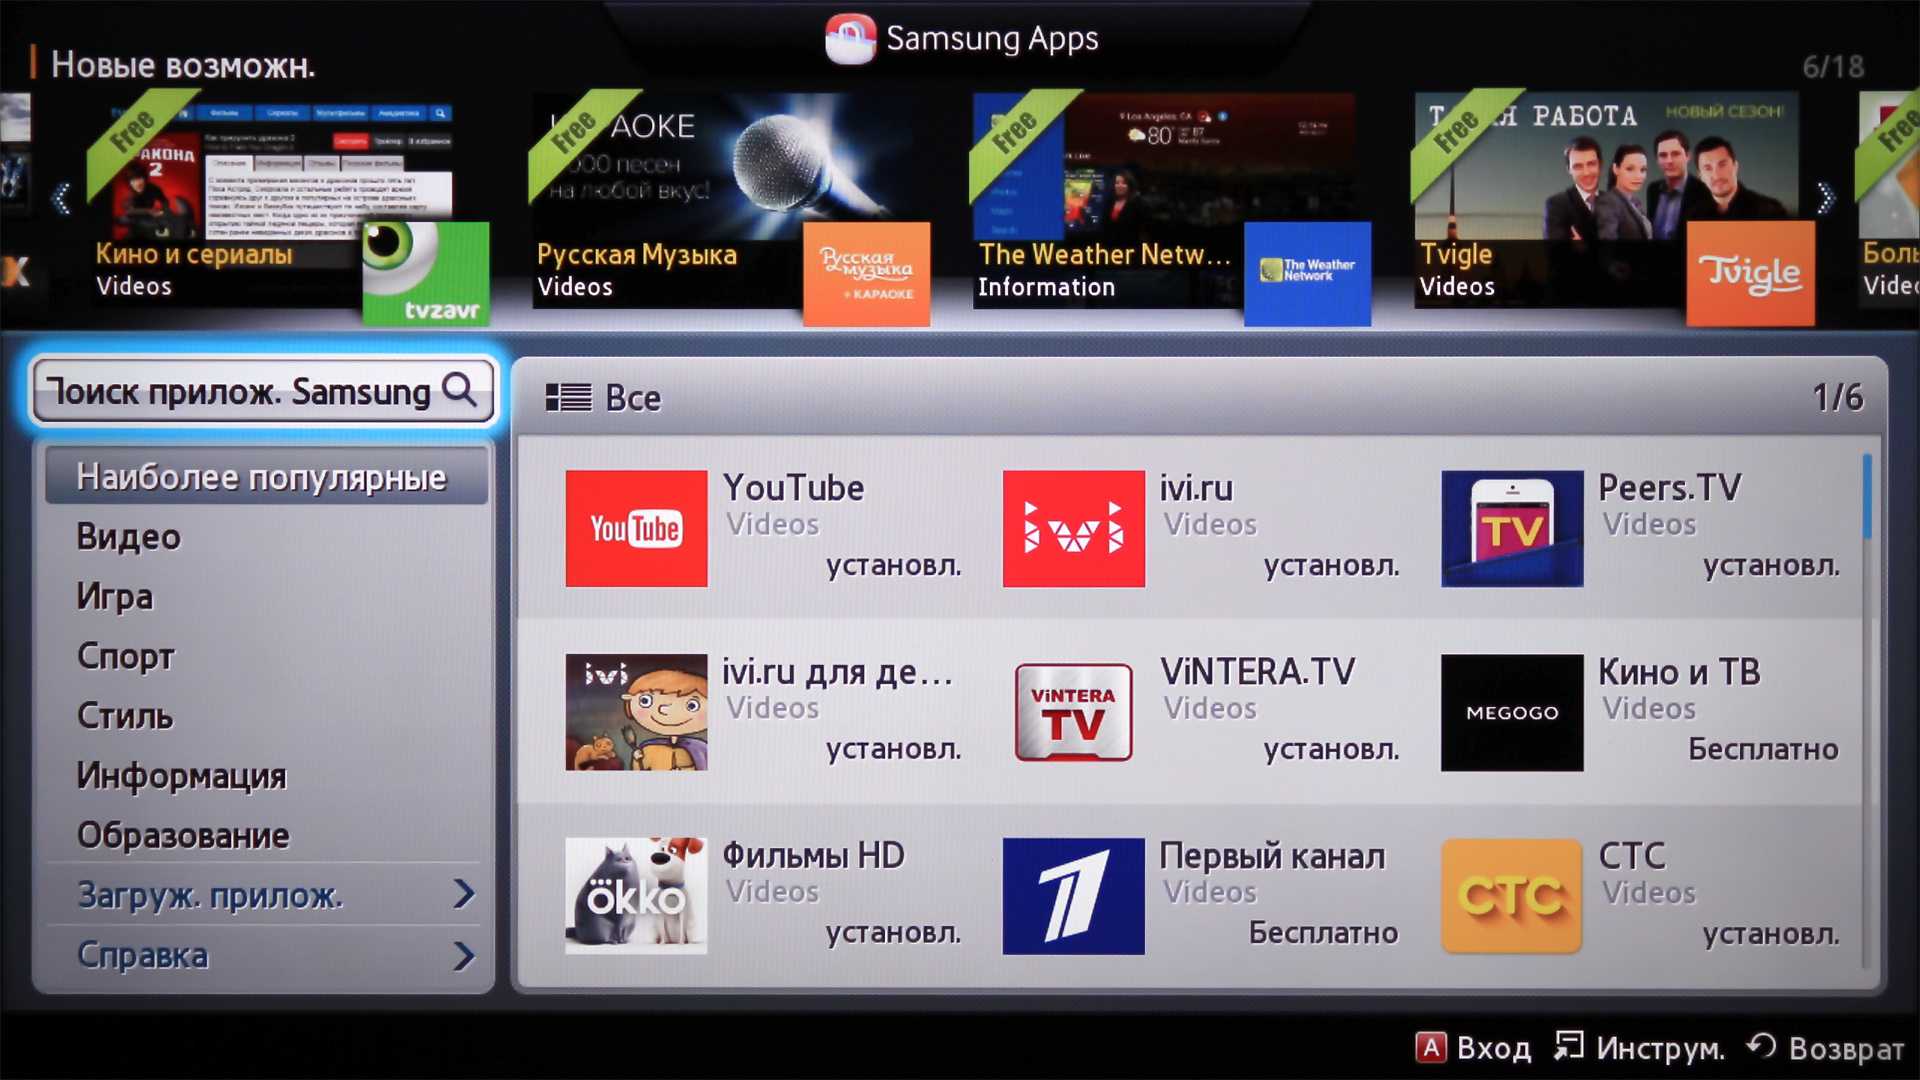 Часы на телевизоре самсунг. Samsung Smart TV (Orsay). Samsung Orsay 2014 телевизор. Samsung apps для Smart TV. Samsung Smart TV 2014.